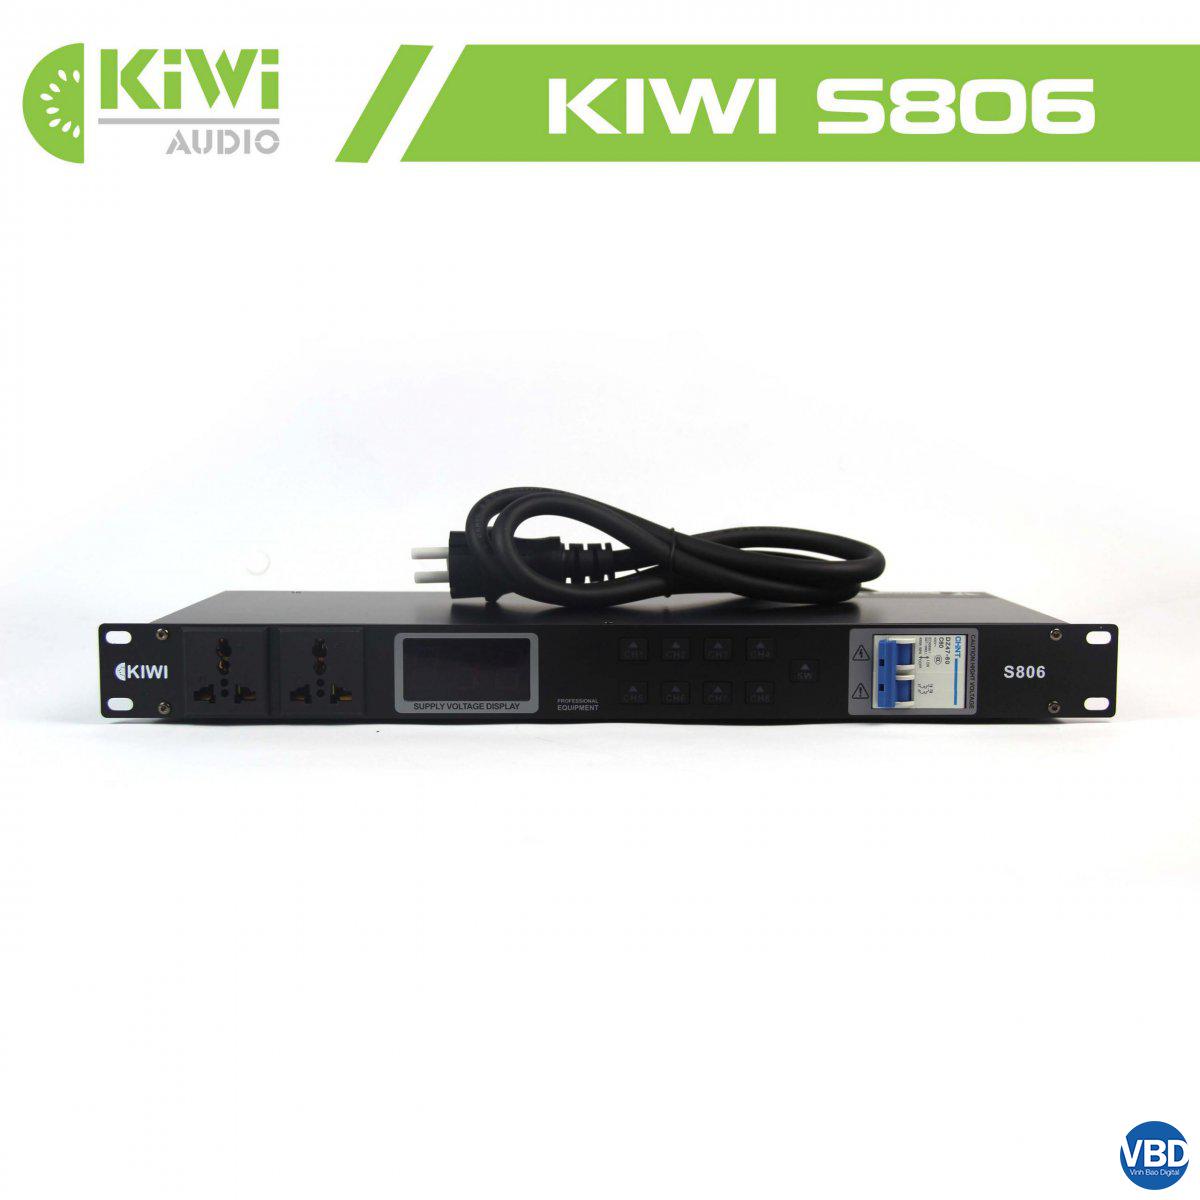 2Thiết bị quản lý nguồn điện tự động KIWI S806 công nghệ hiện đại